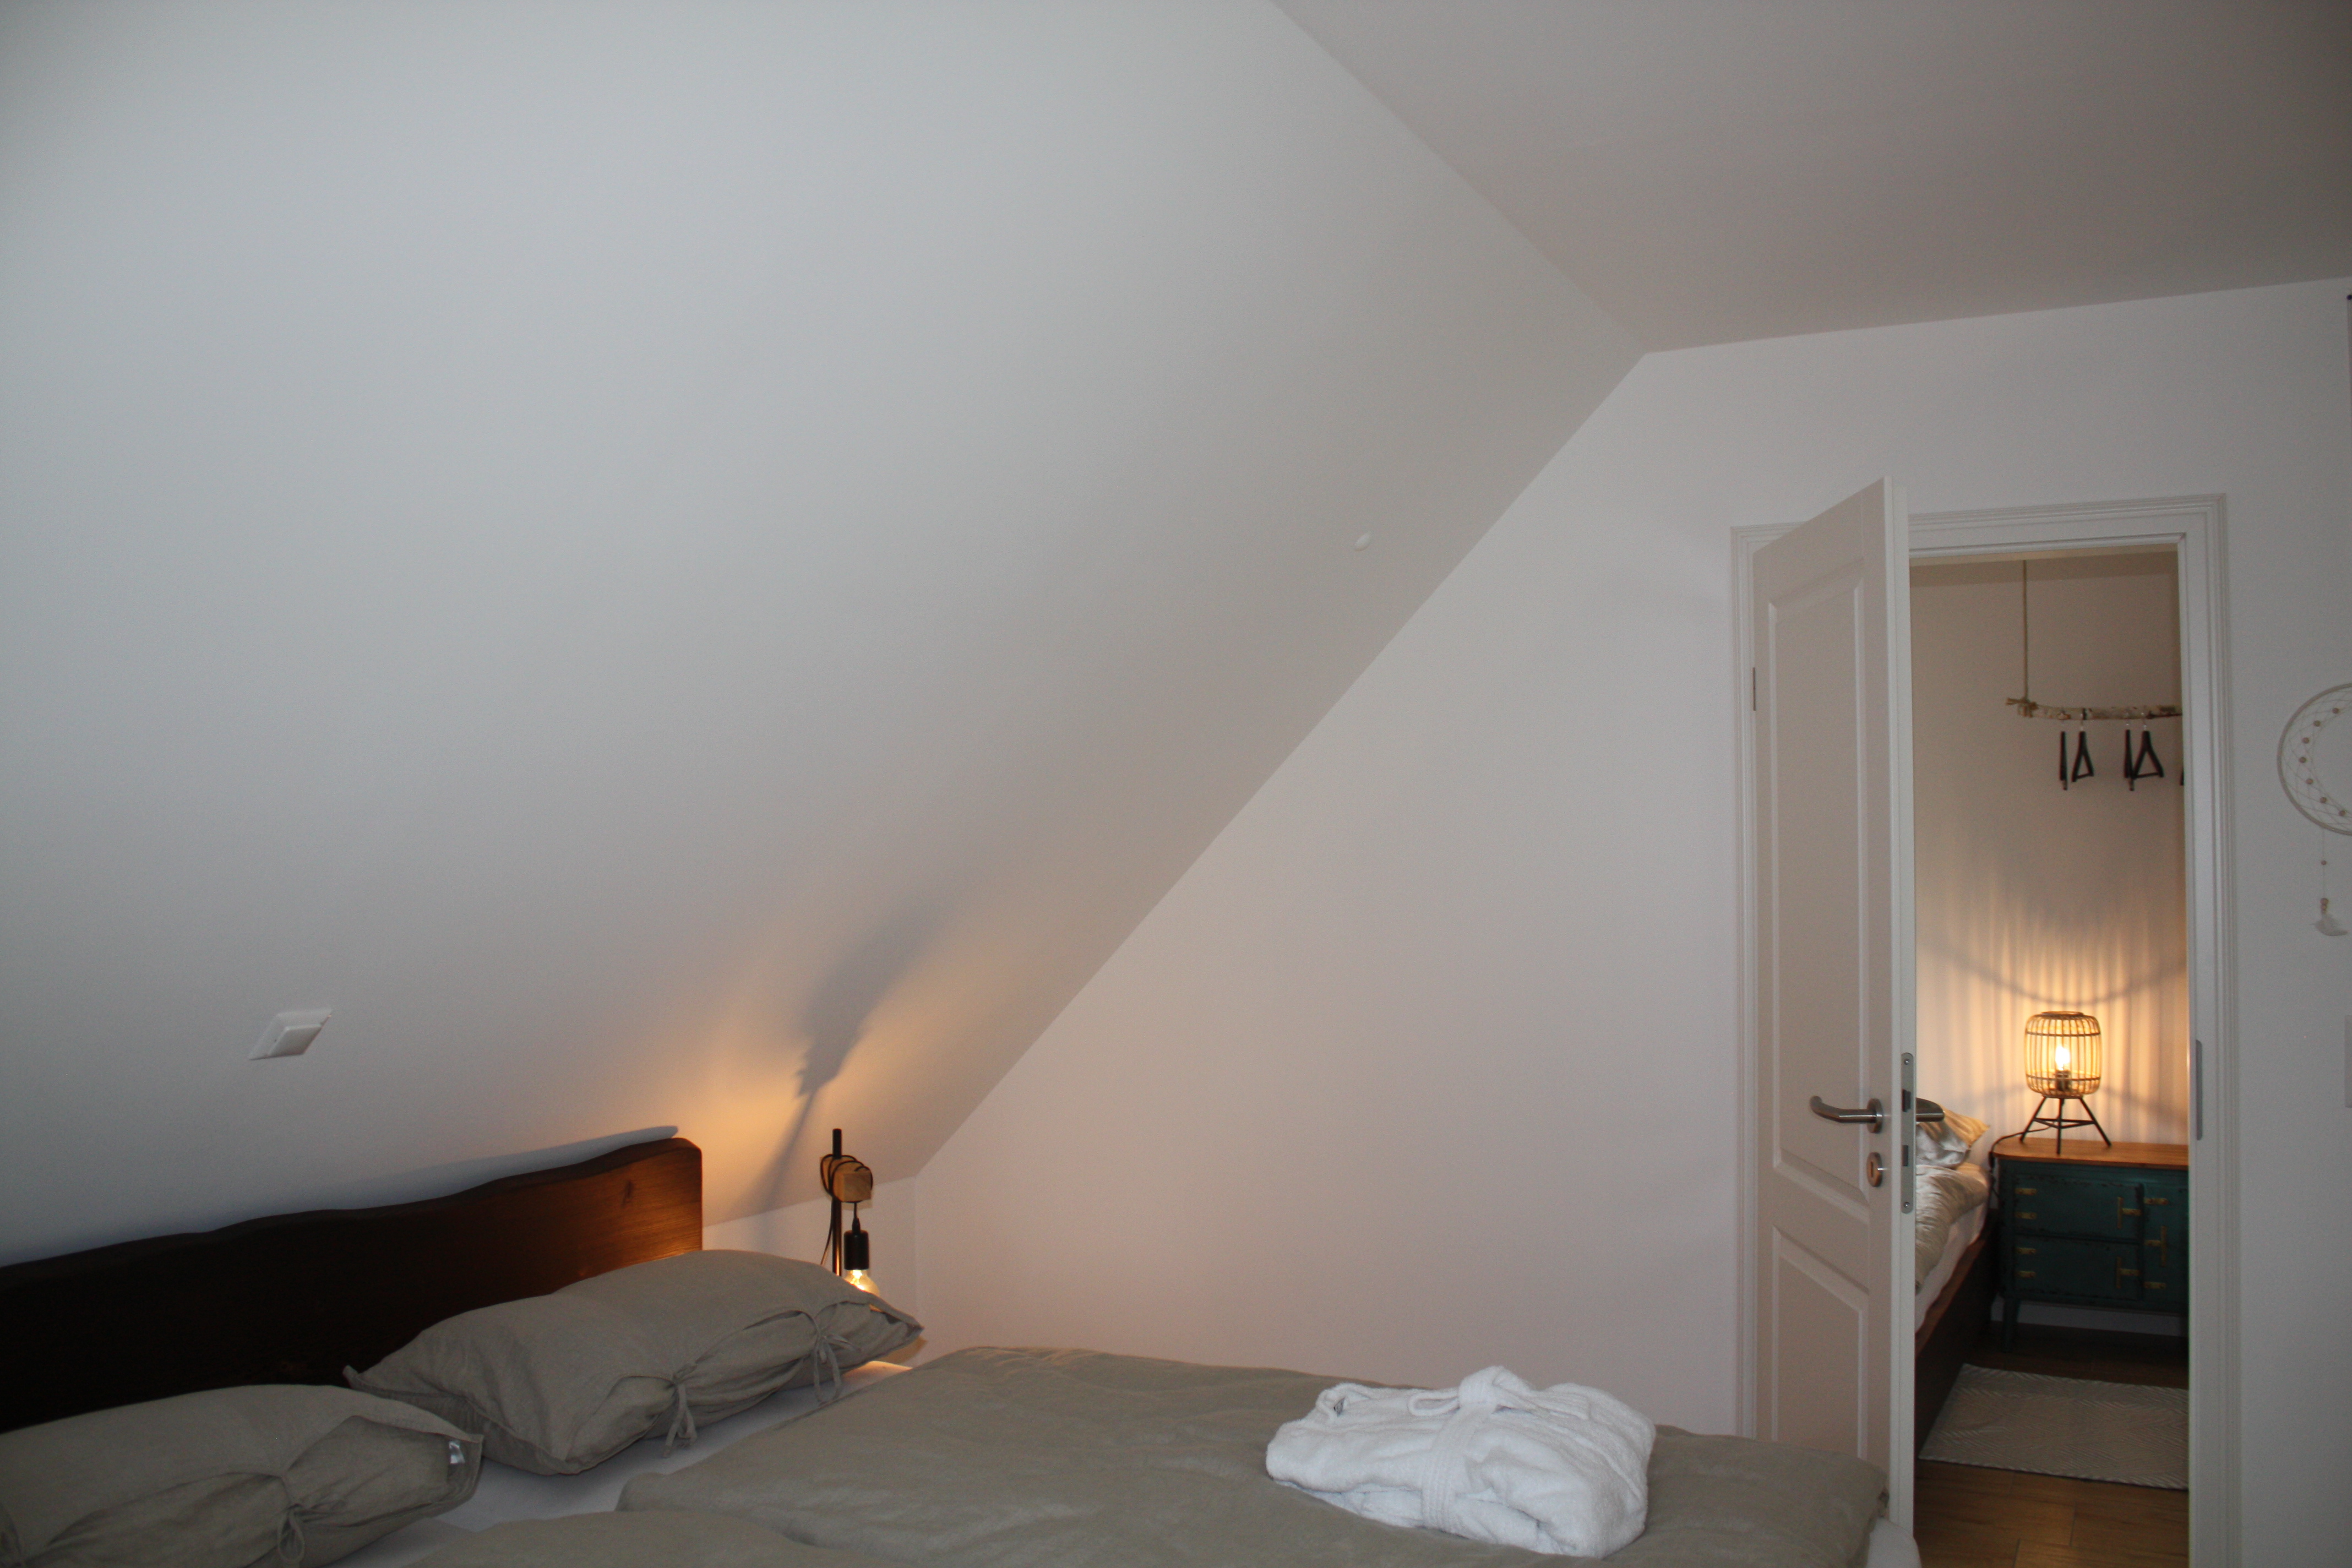 Schlafzimmer im Ferienhaus Heuliebe, Herbstein / OT Altenschlirf.
